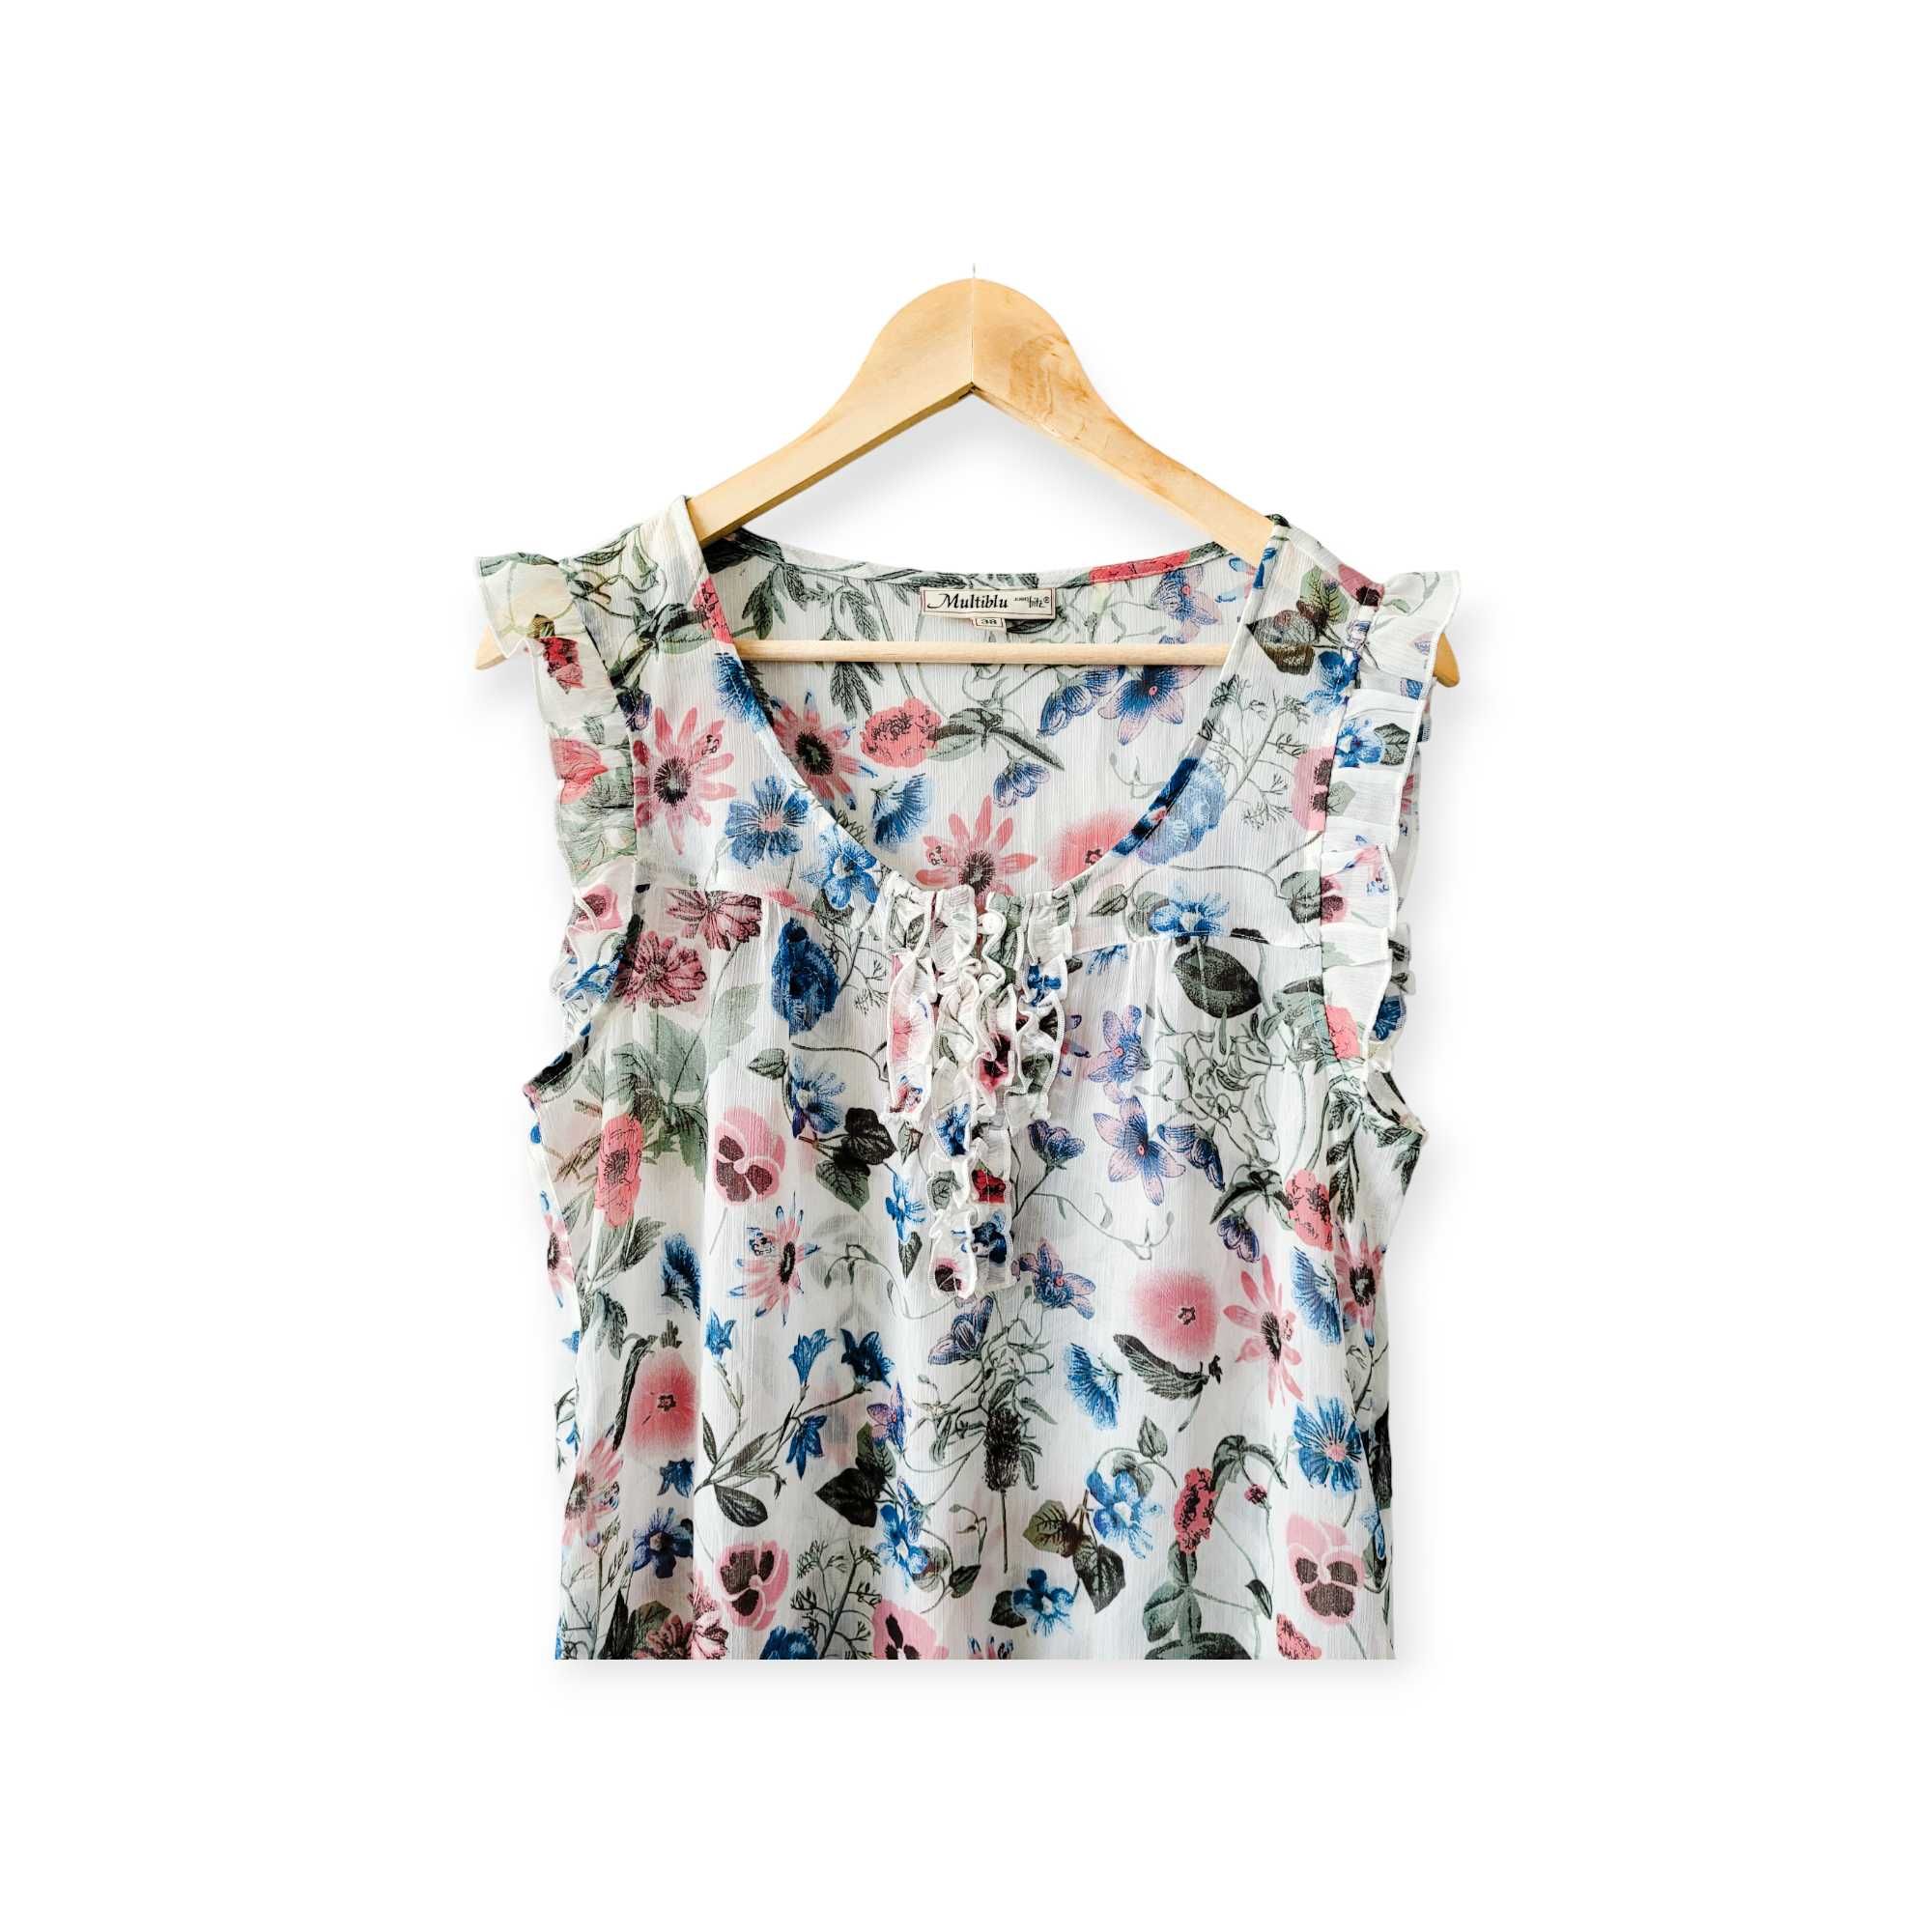 Kolorowa zwiewna bluzka damska M koszulka z falbanami boho kwiaty łąka